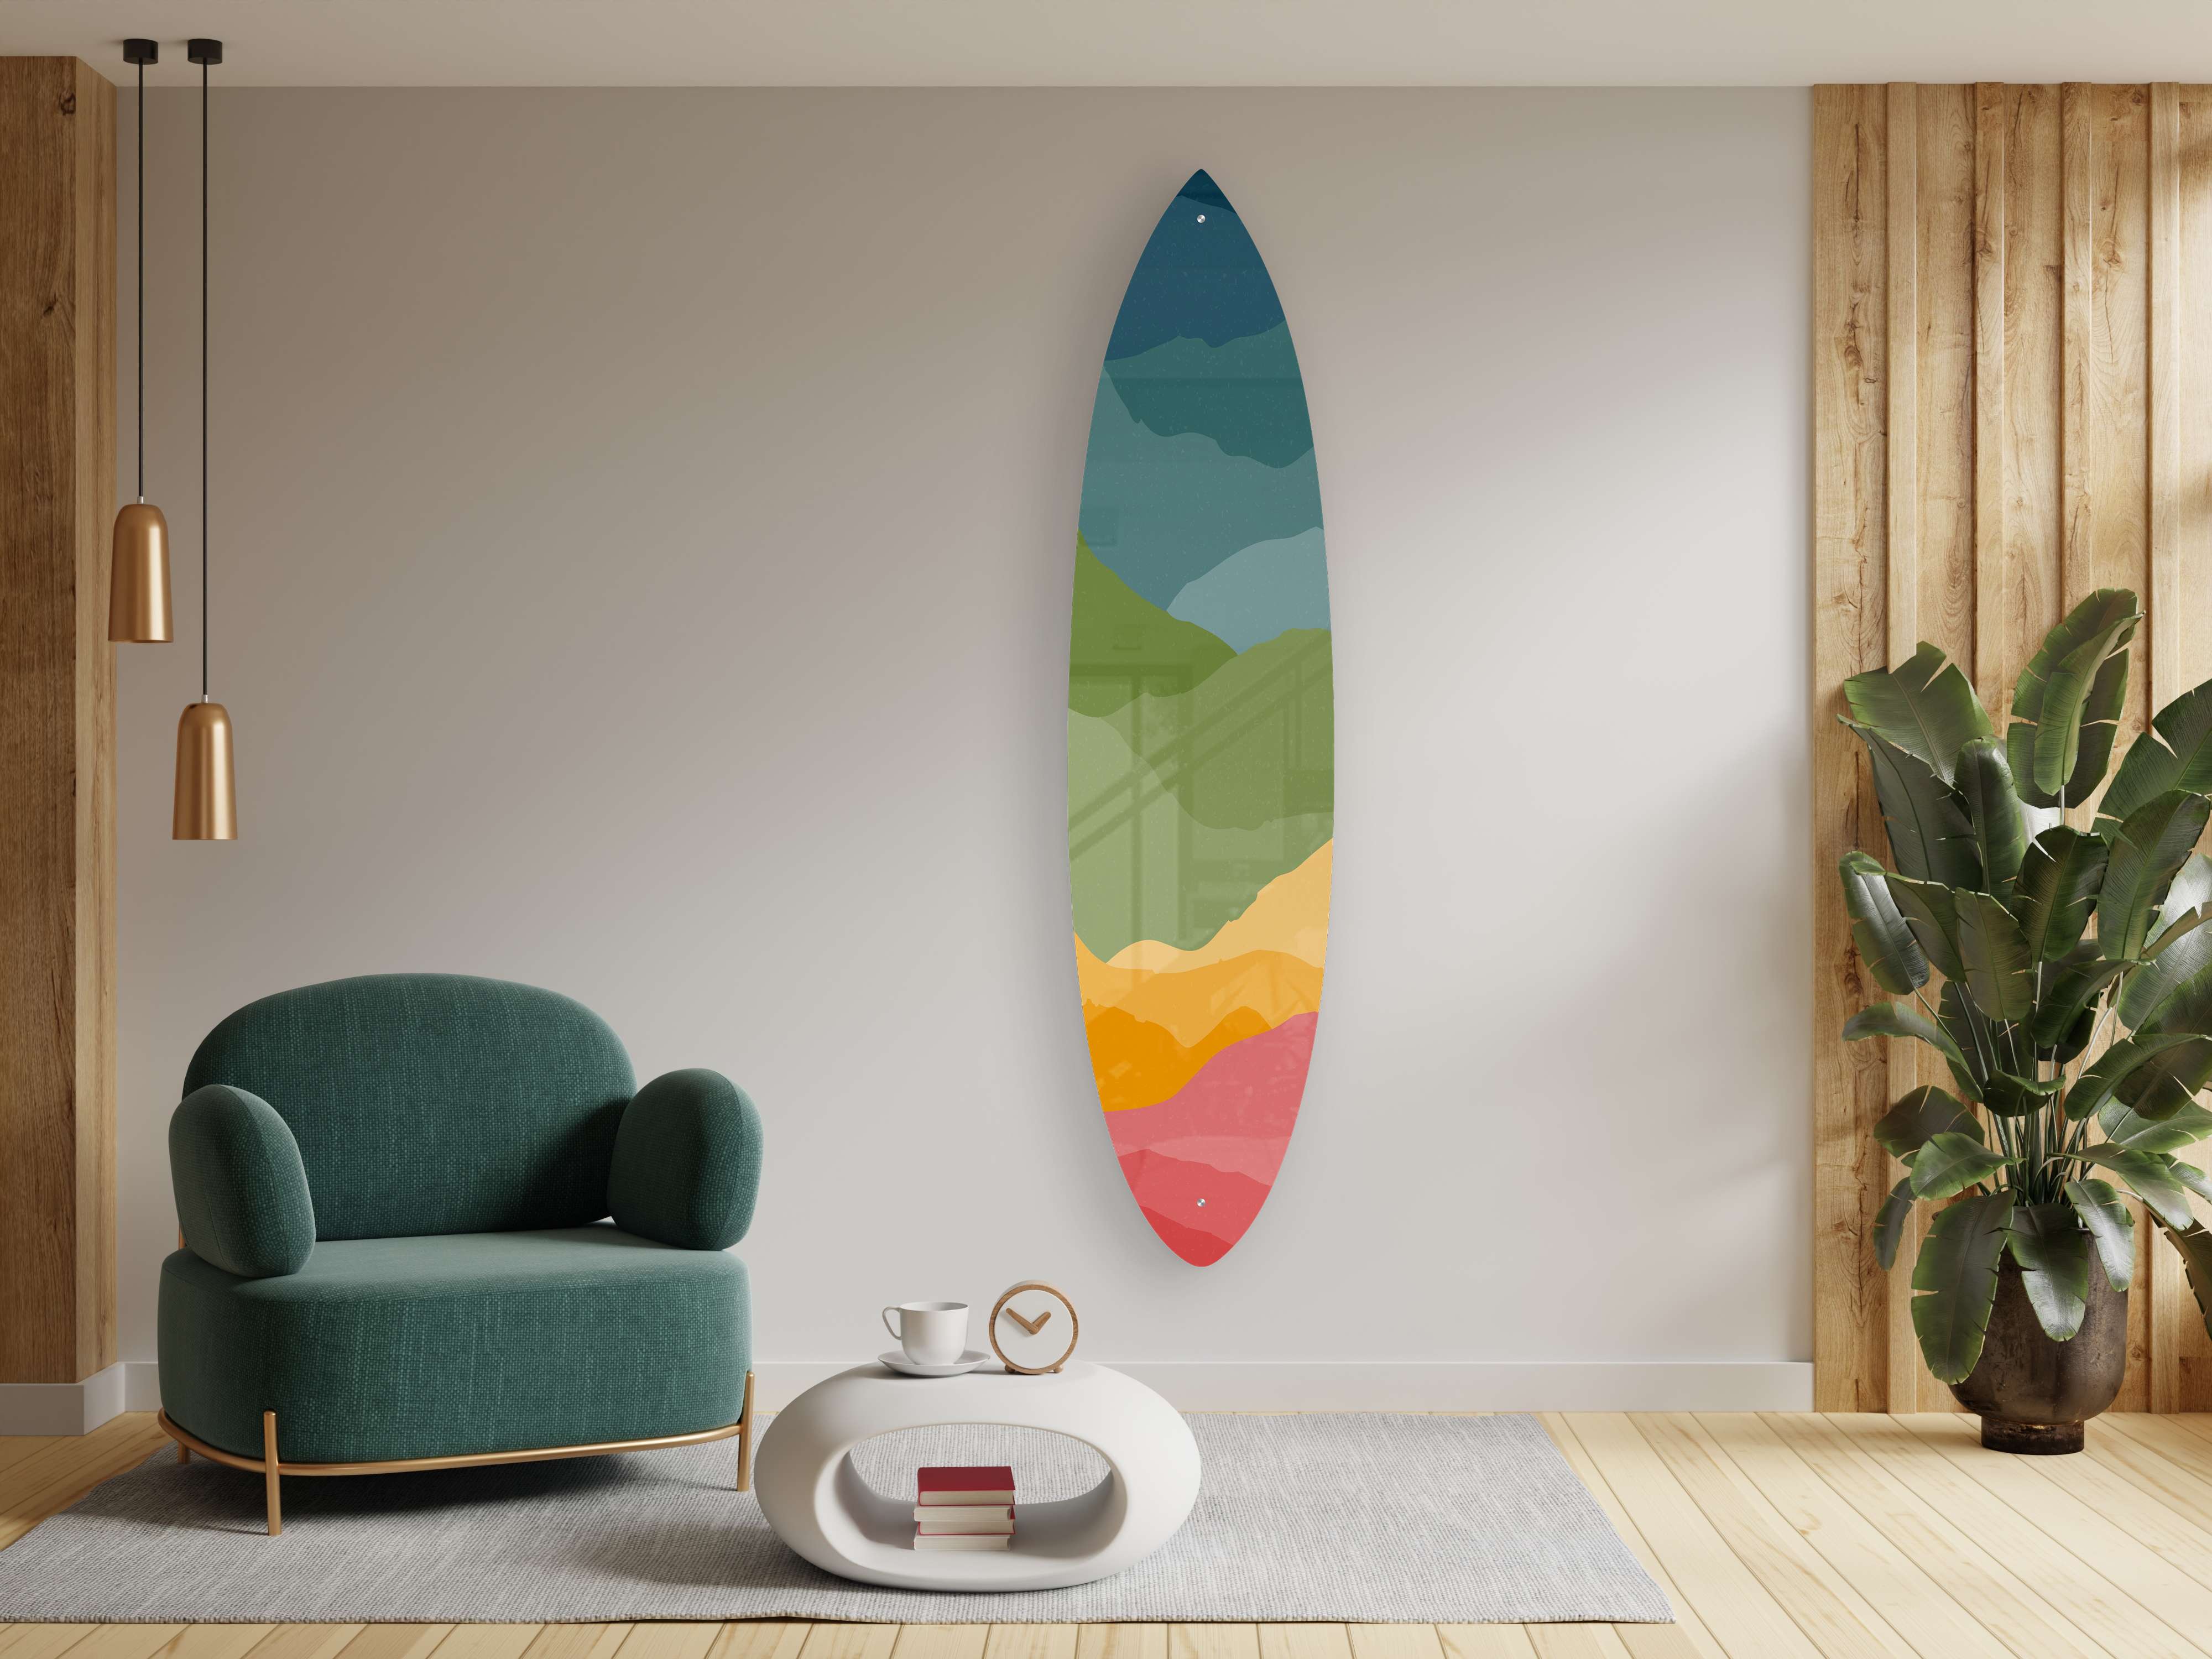 Benjara Yellow and Green Wooden Surfboard Wall Art Decor BM238291 - The  Home Depot